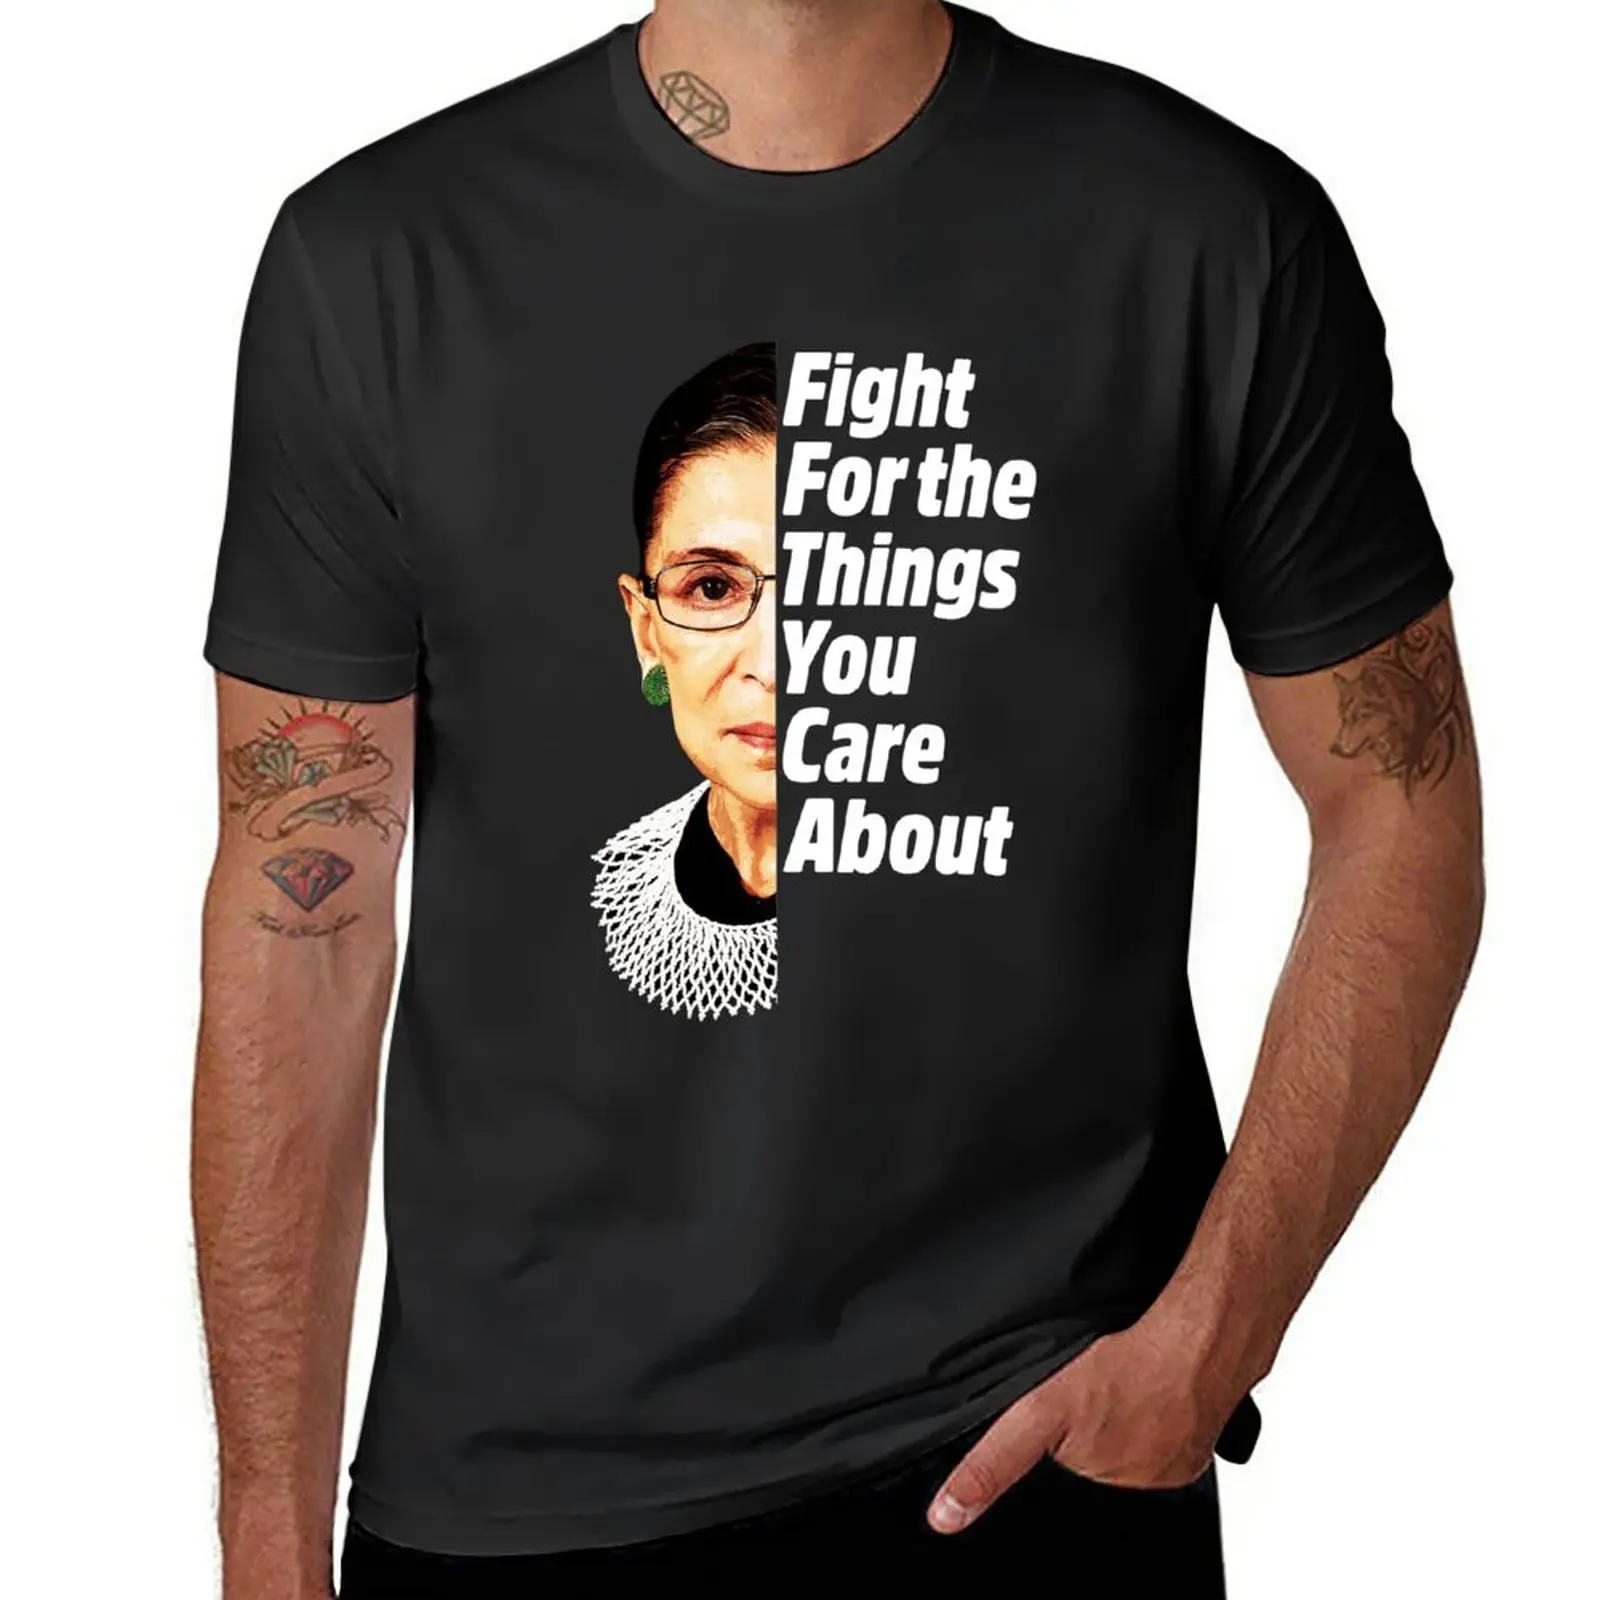 Новая футболка RBG Ruth Bader Ginsburg Fight For The Things You Care About, футболки больших размеров, забавные футболки для мужчин